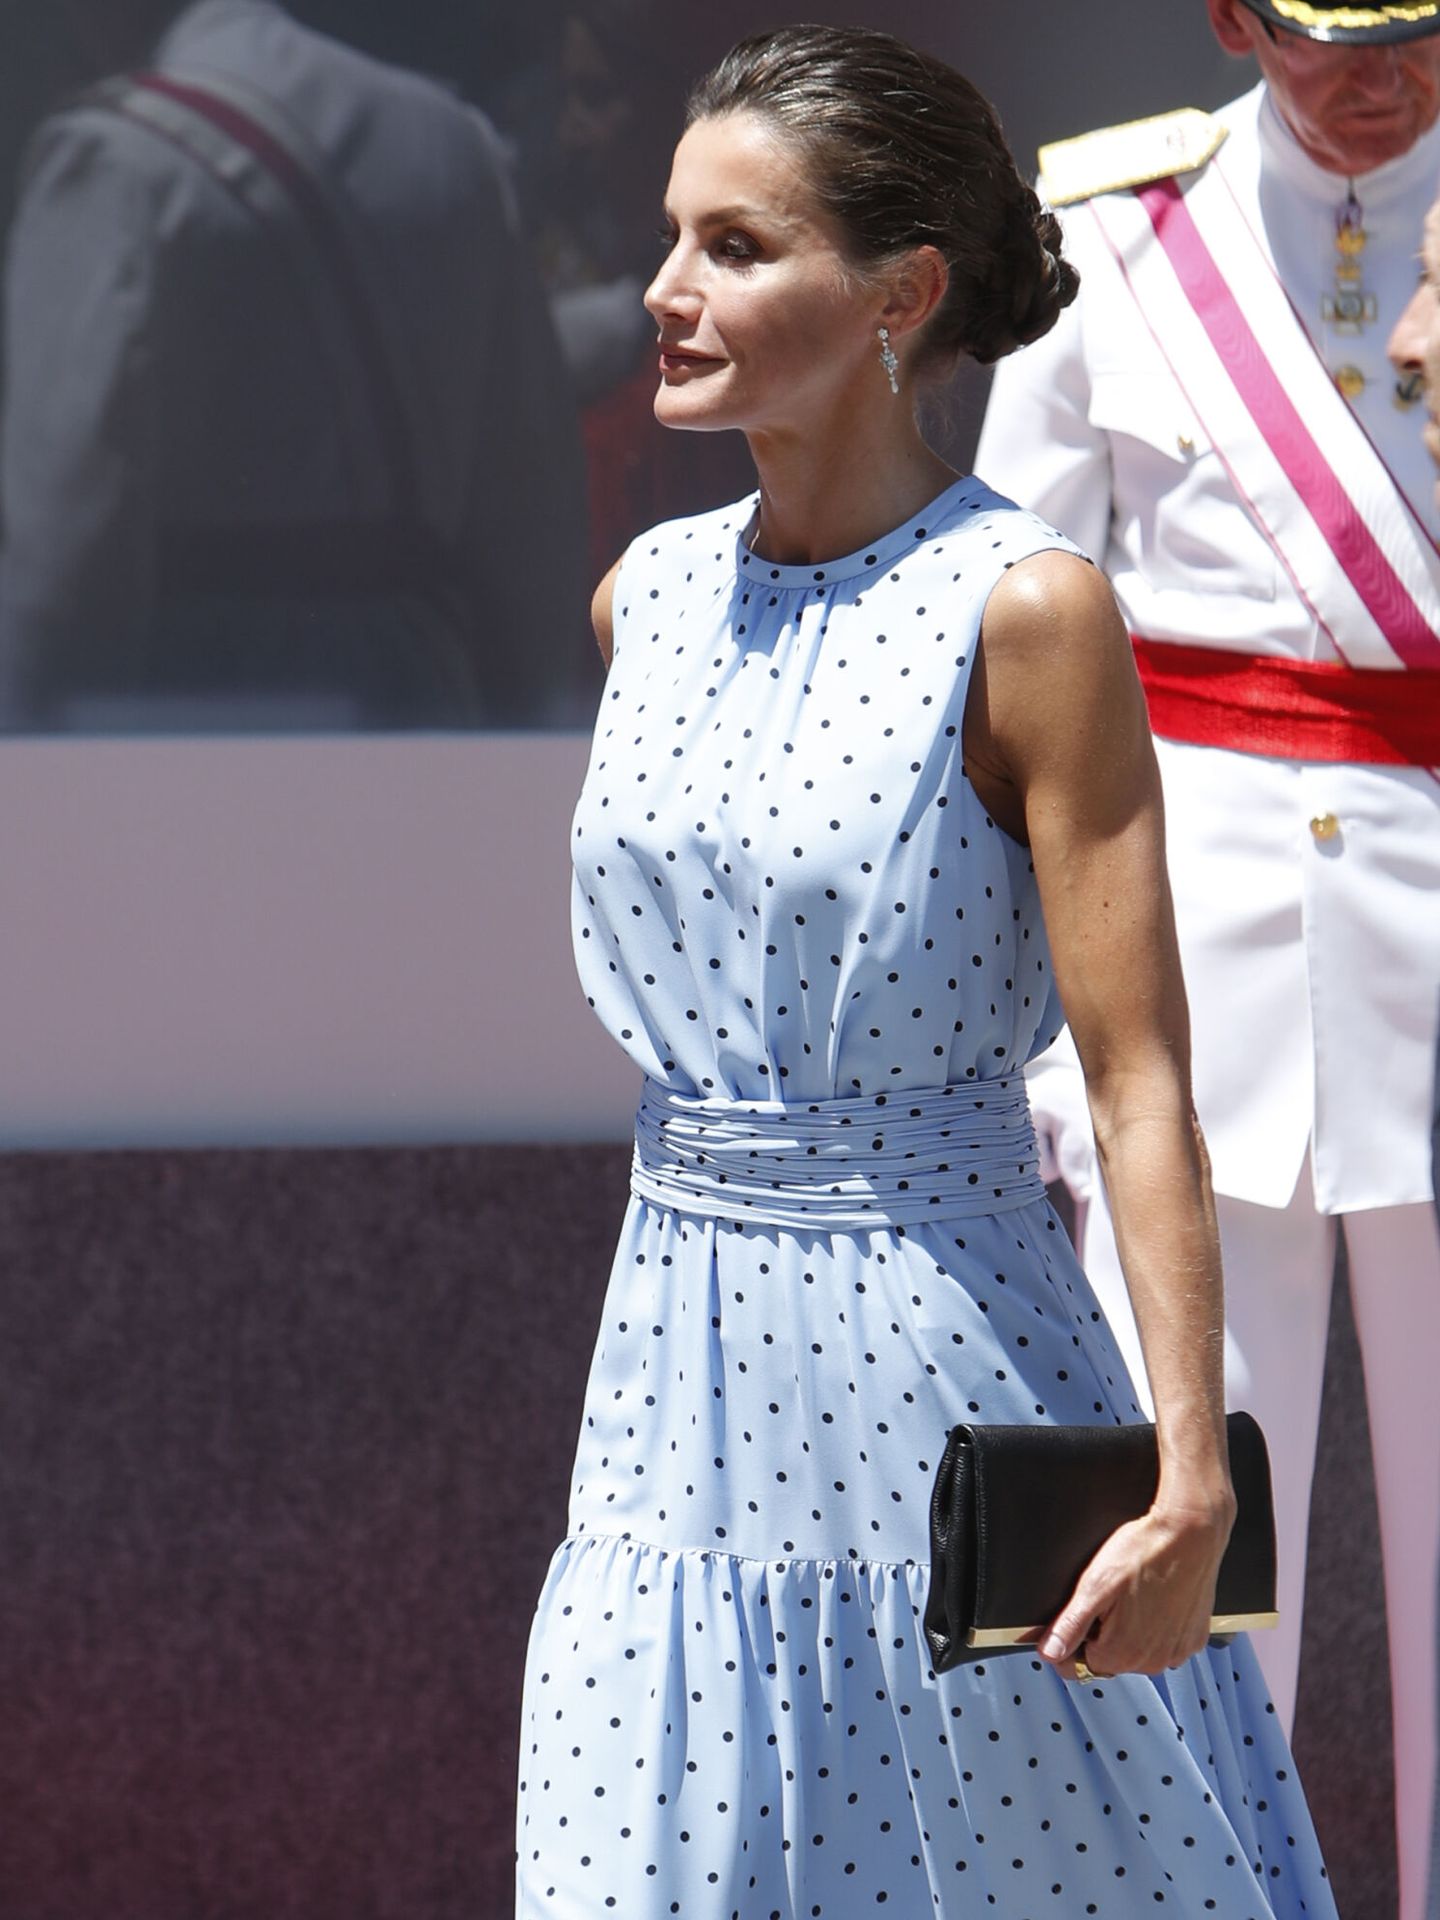 La reina Letizia, en las Fuerzas Armadas con clutch de Carolina Herrera. (EFE/Javier Belver)